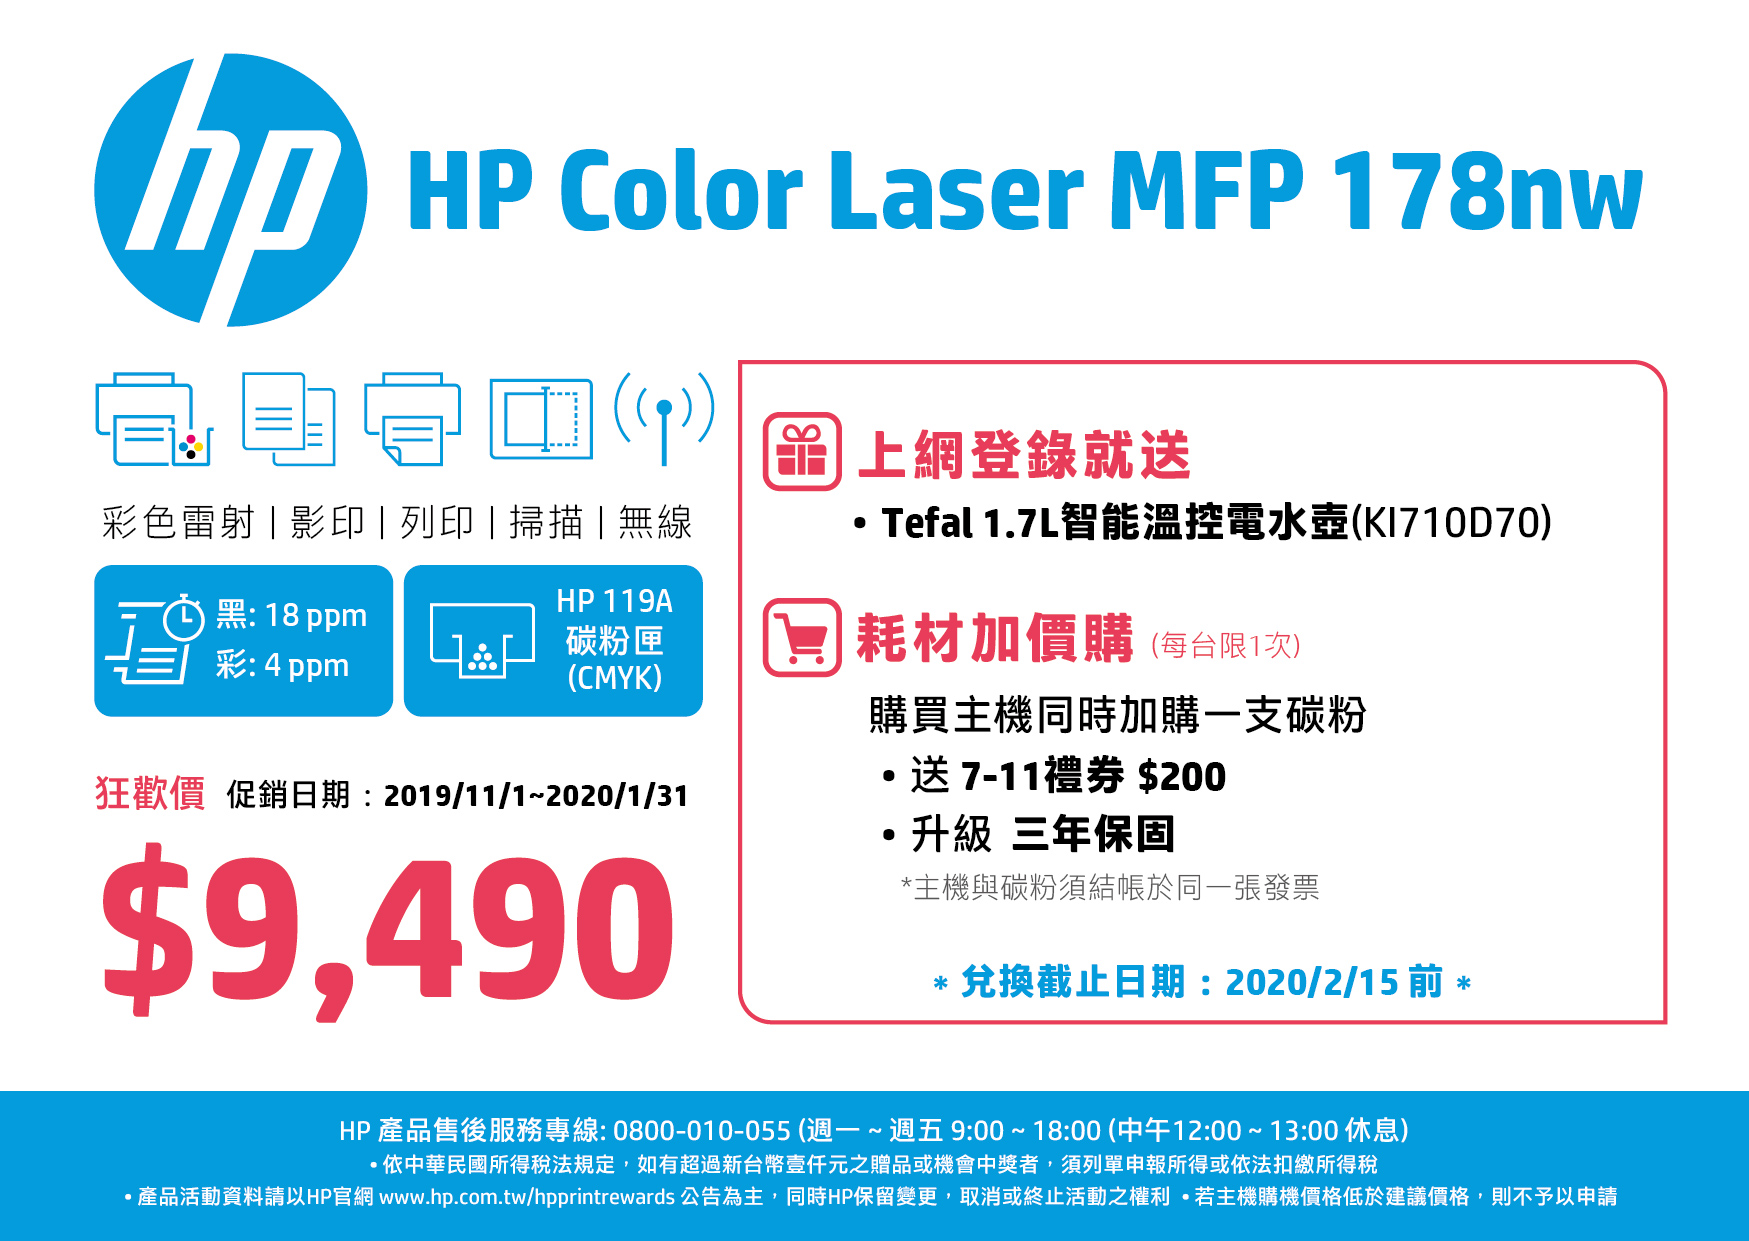 HP MFP 178nw 彩色雷射複合機